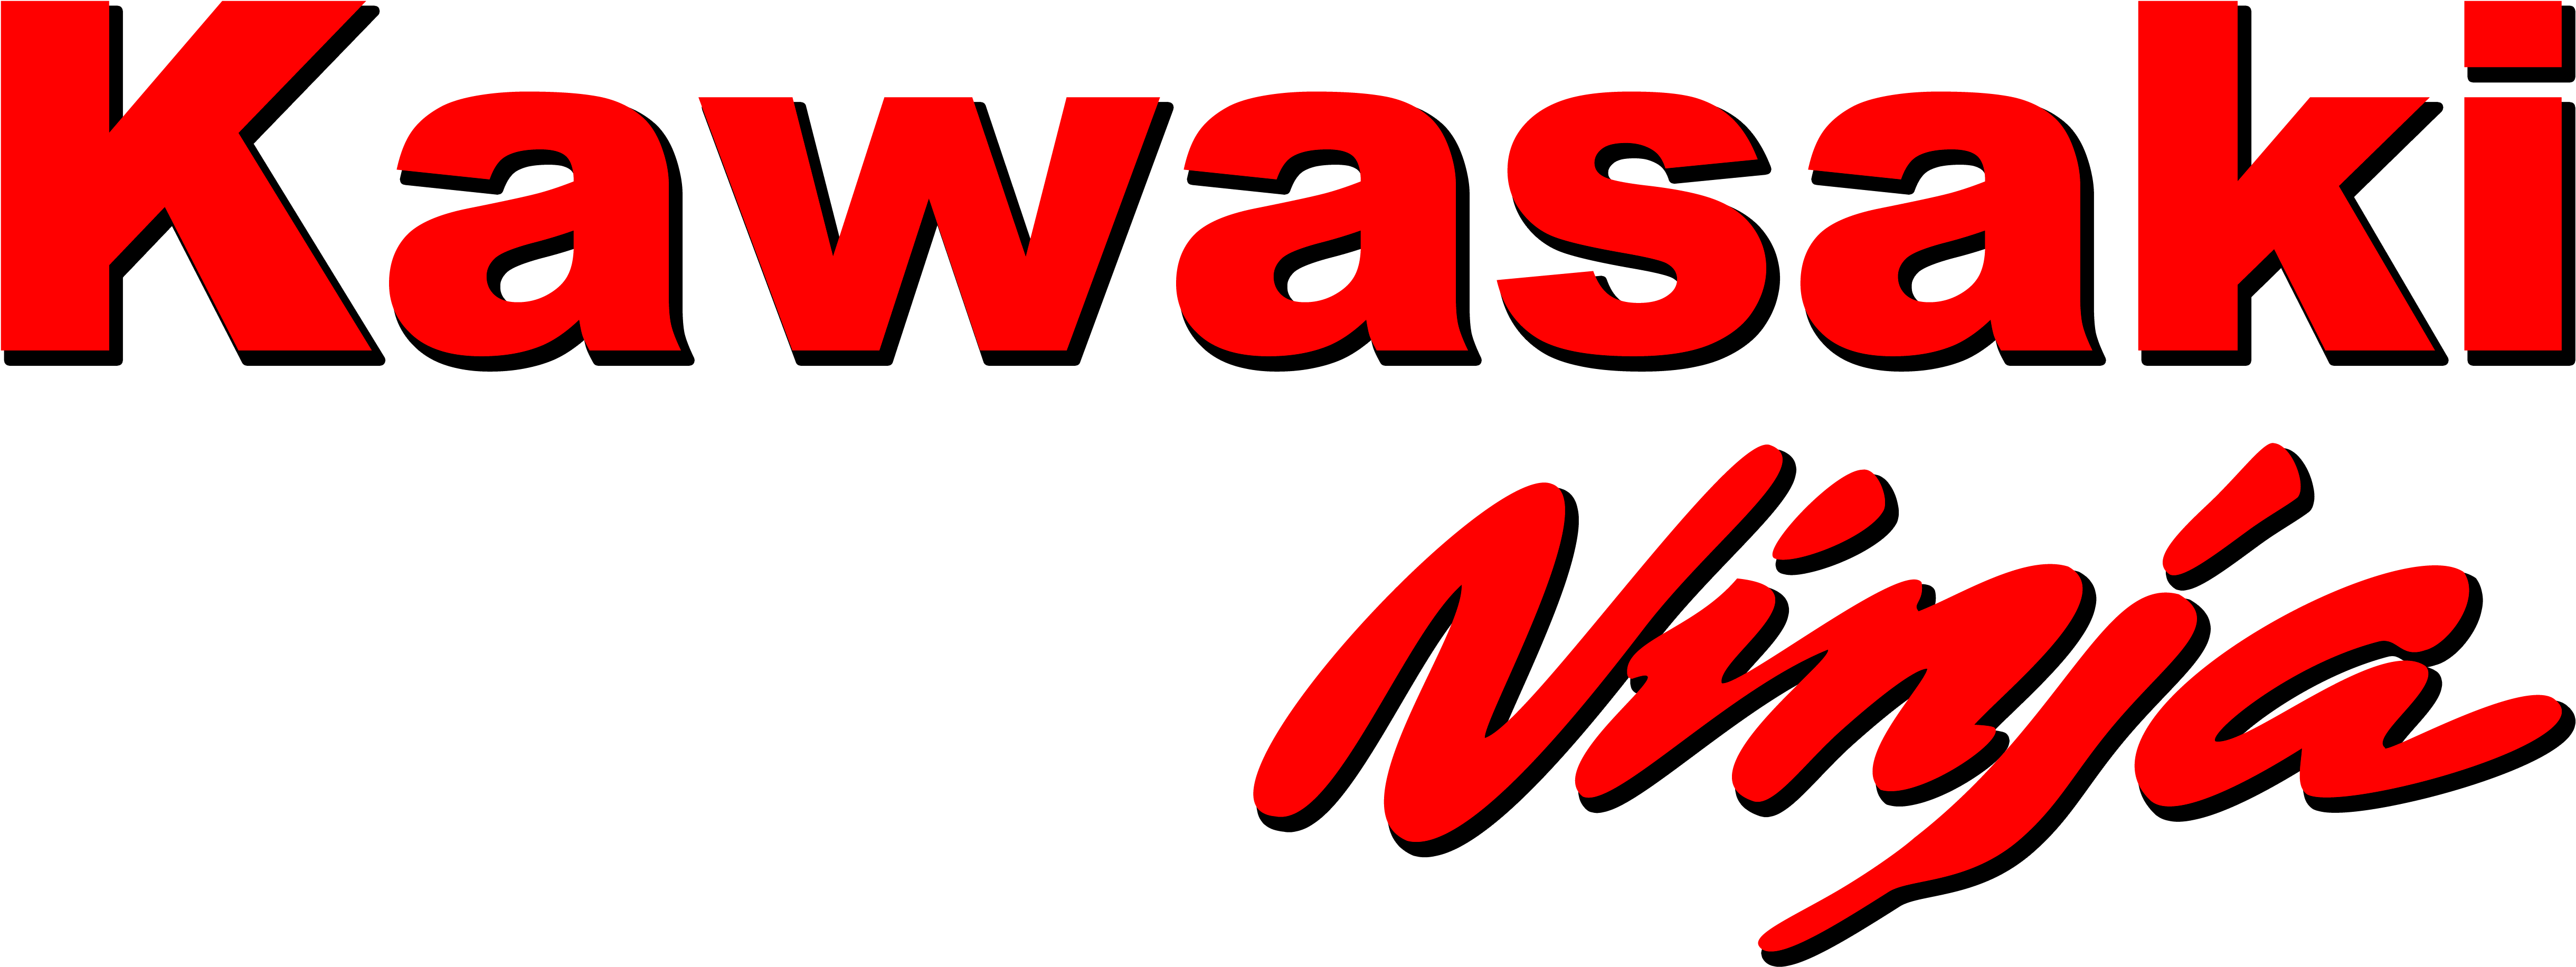 Kawasaki Logo Transparent Image